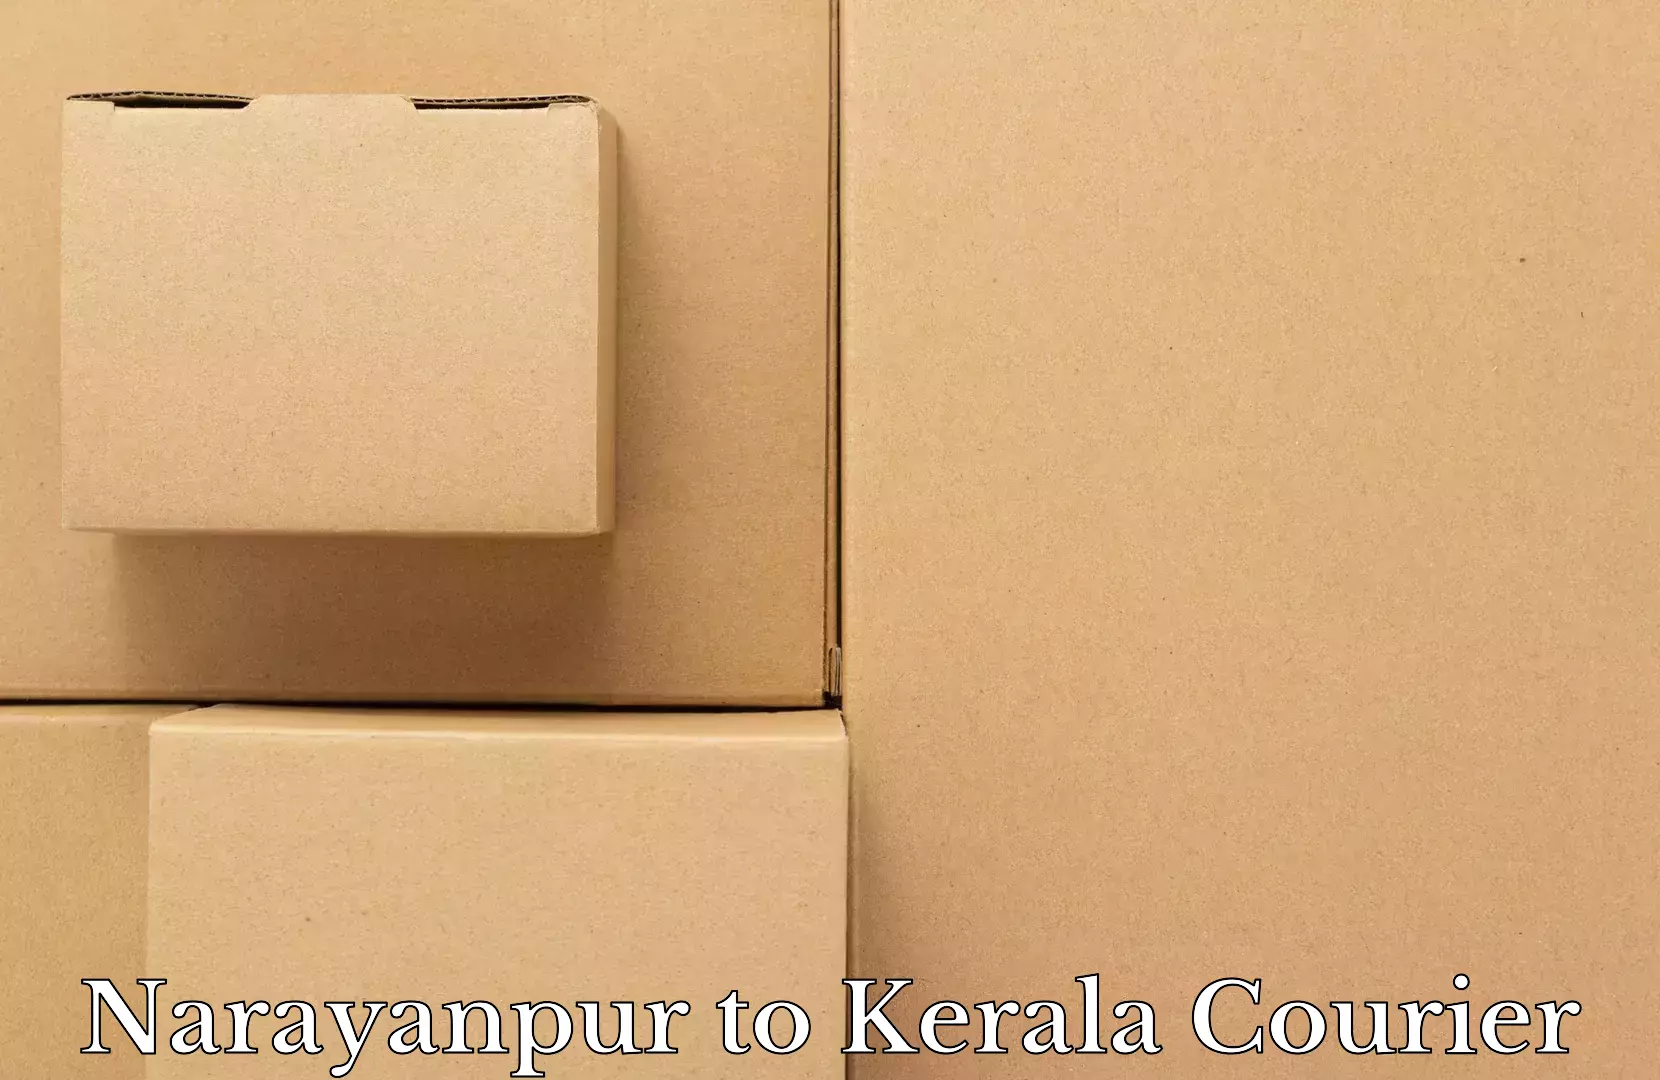 Luggage delivery network Narayanpur to Mundakayam